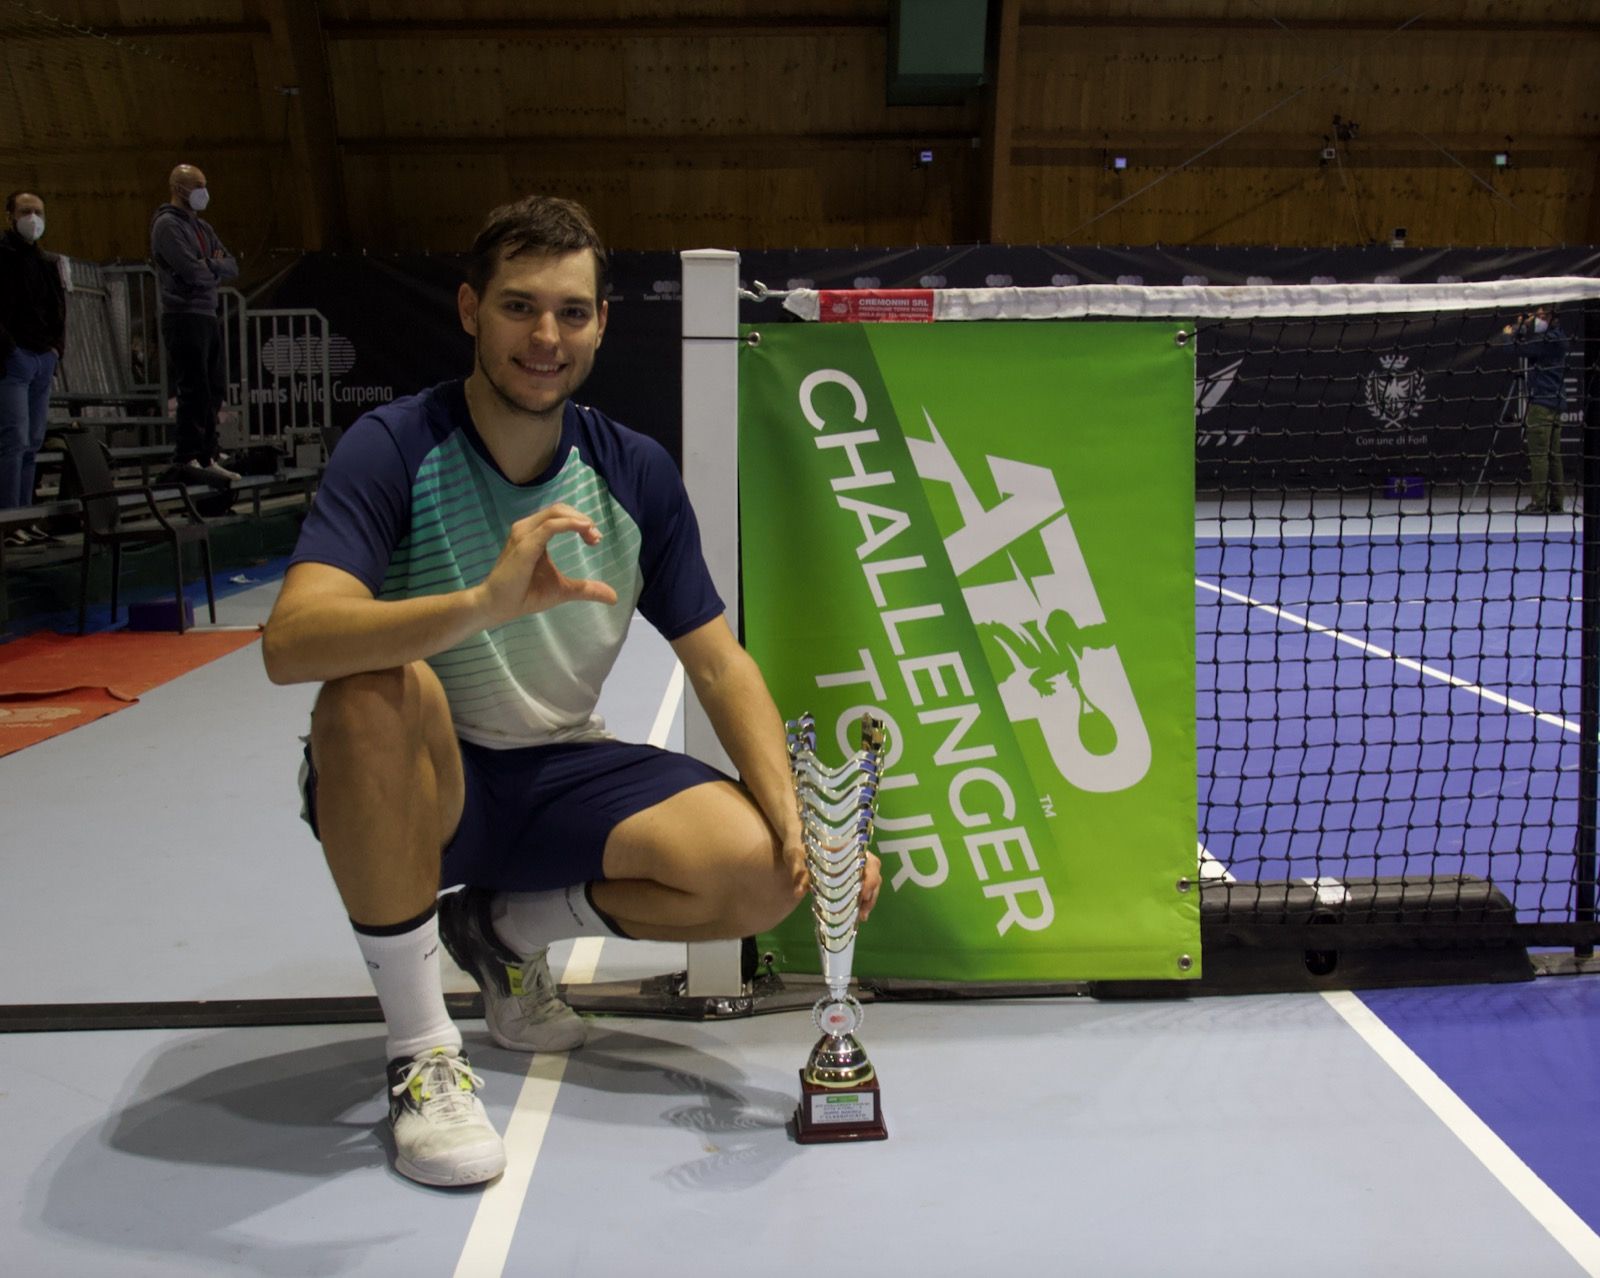 Nella foto, il vincitore del torneo Pavel Kotov